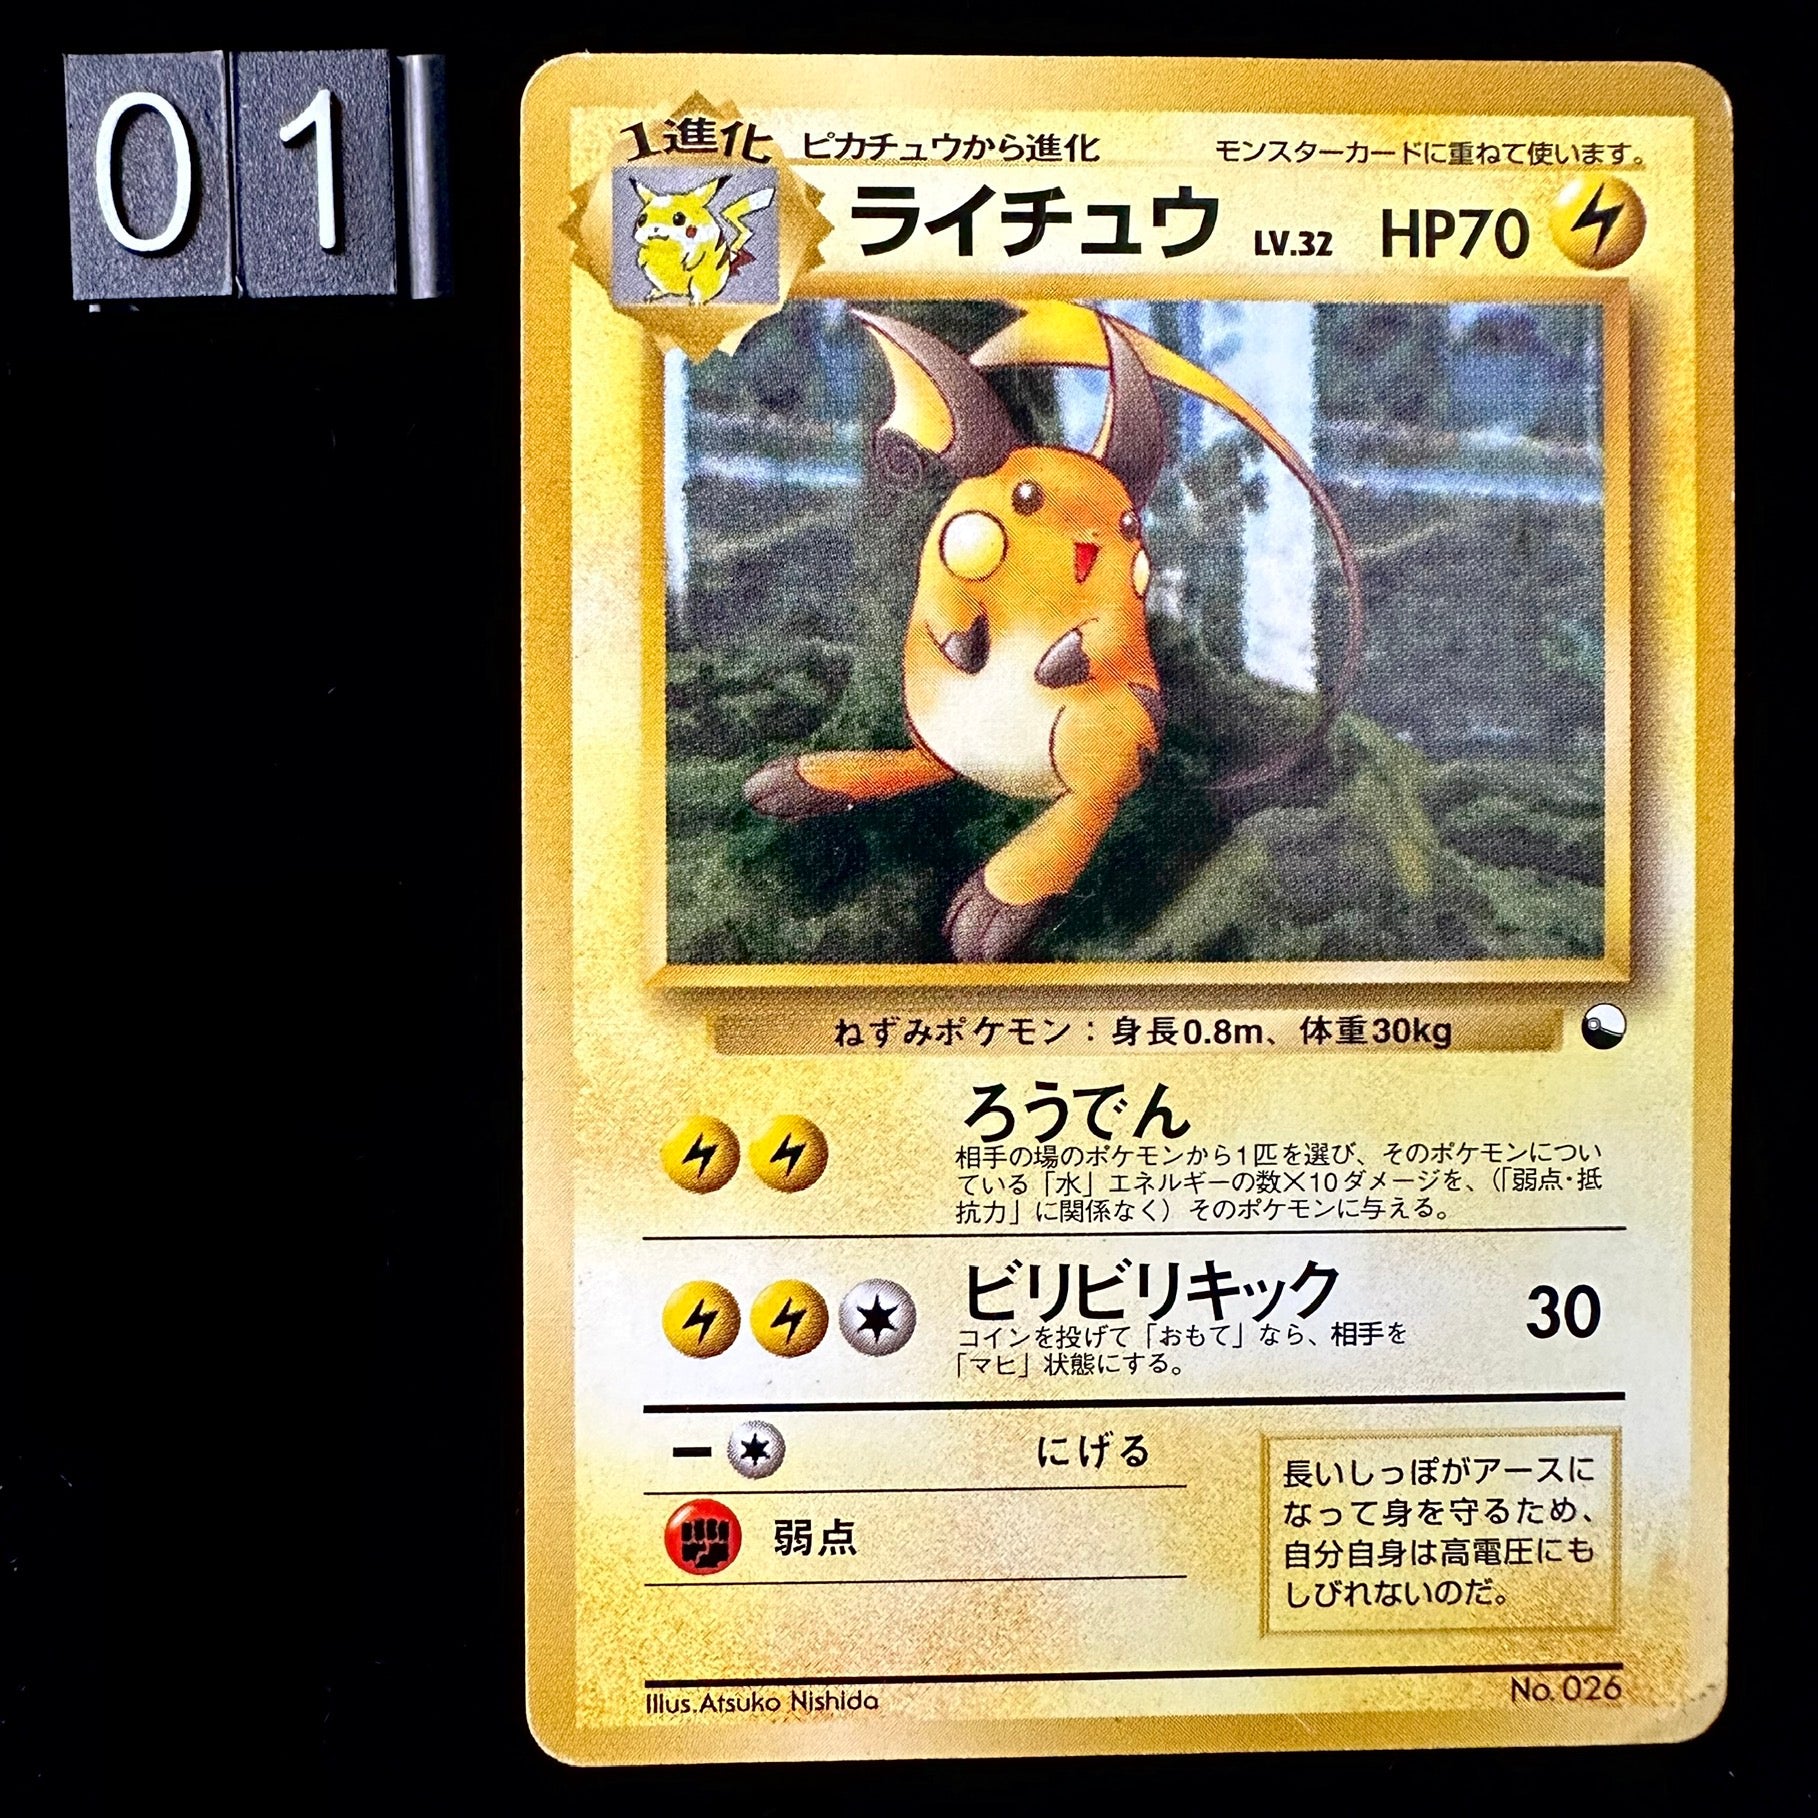 Pokemon Neo - Raikou, Entei, Suicune with postcard